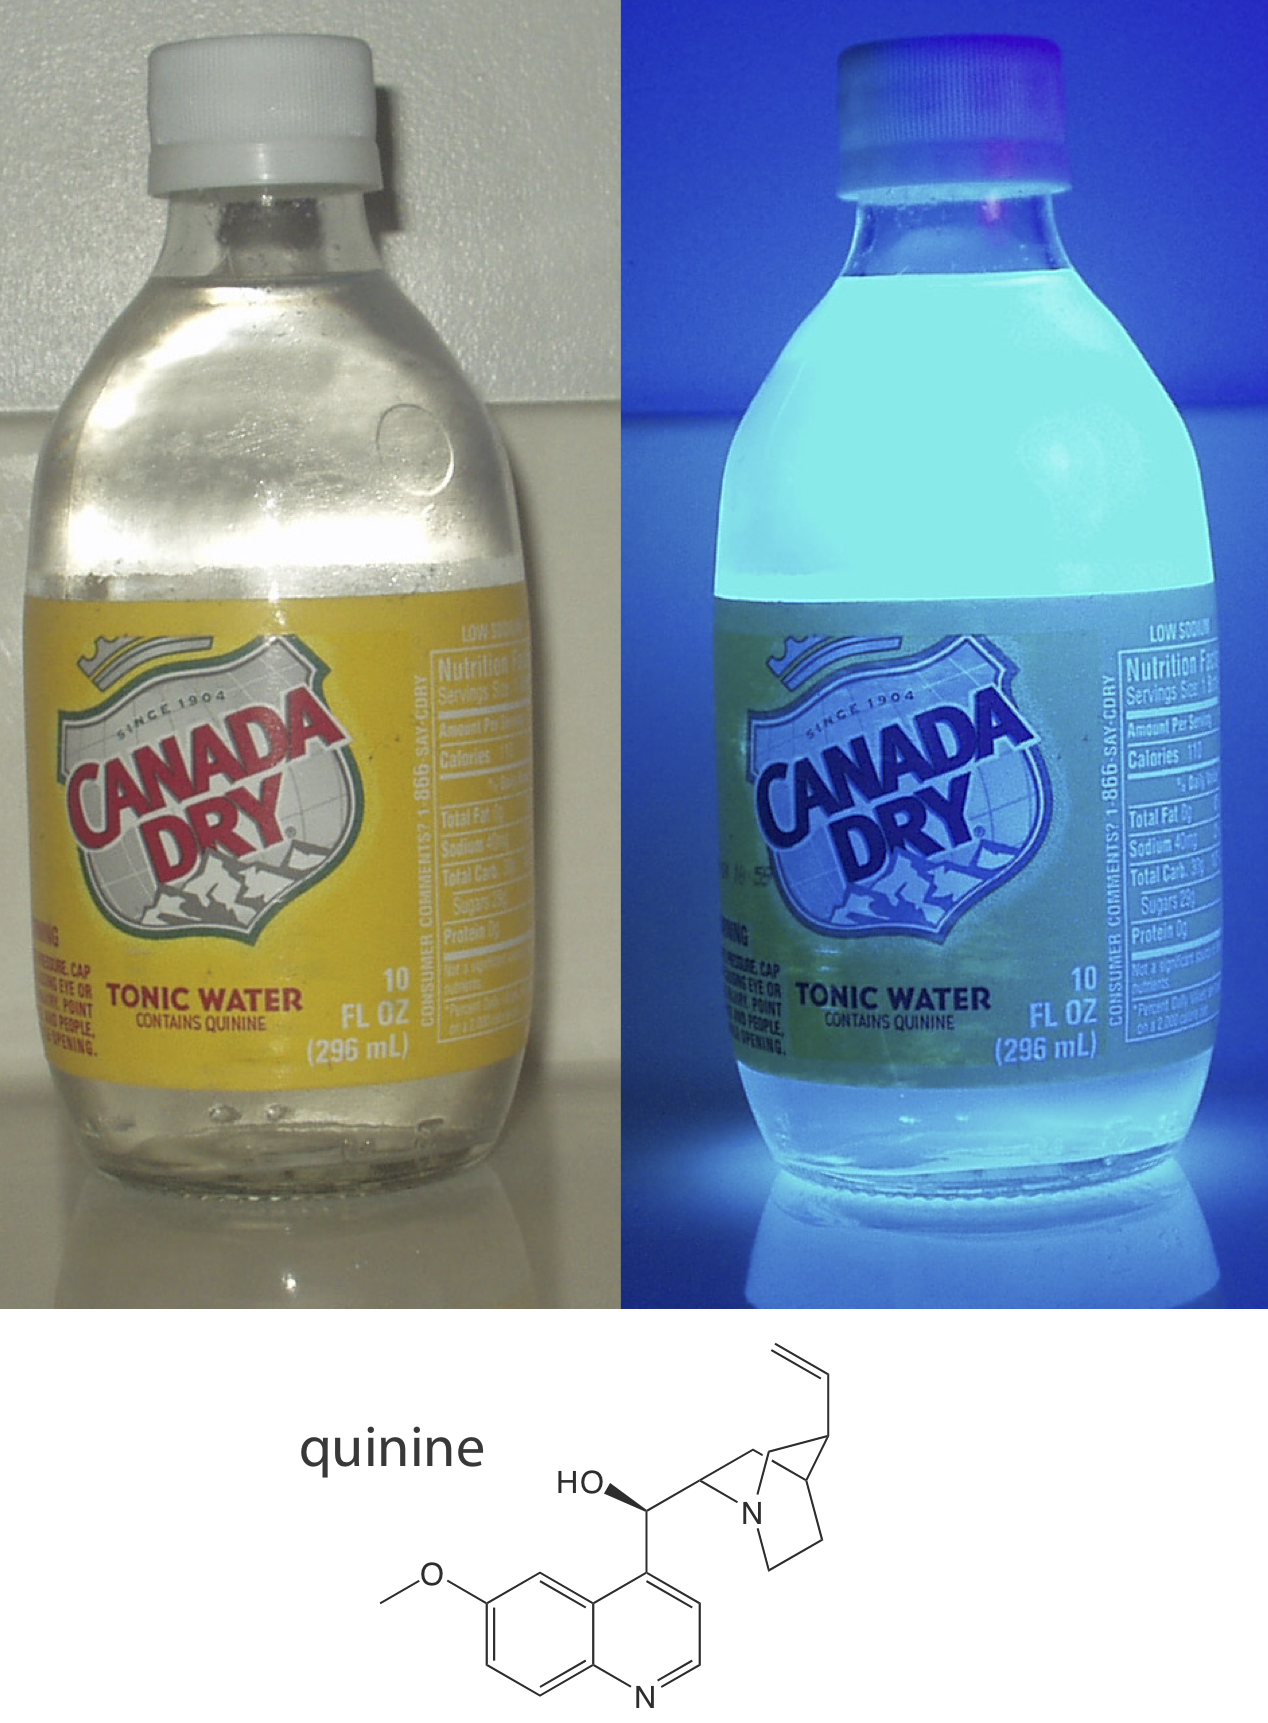 El agua tónica, que contiene quinina, es fluorescente cuando se coloca bajo una lámpara UV.